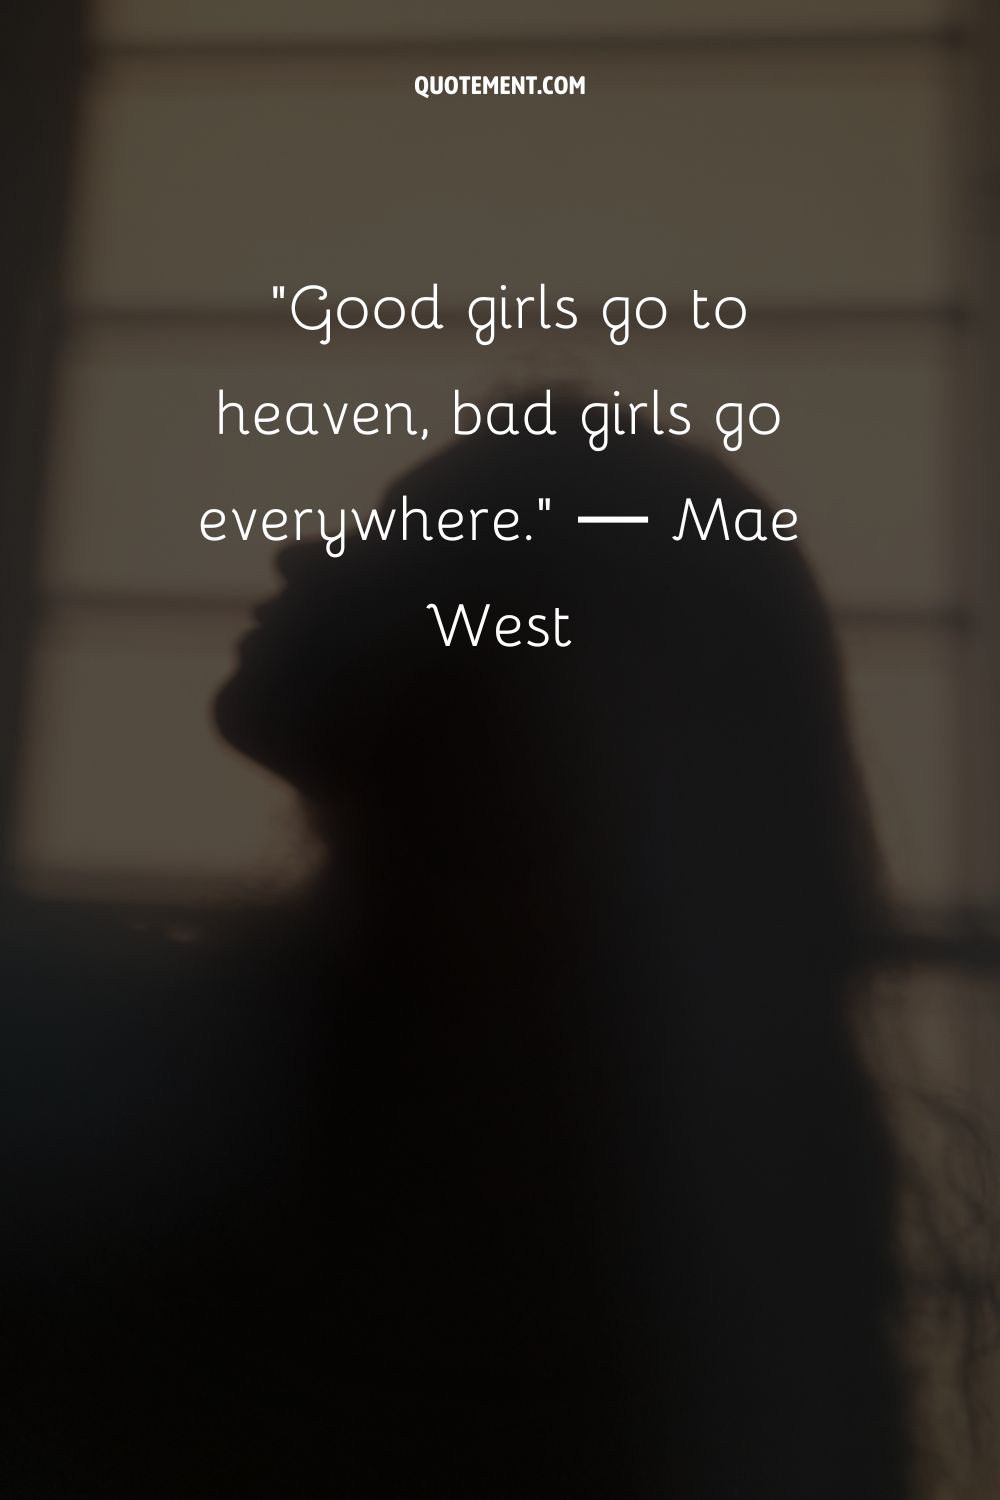 Las chicas buenas van al cielo, las malas van a todas partes